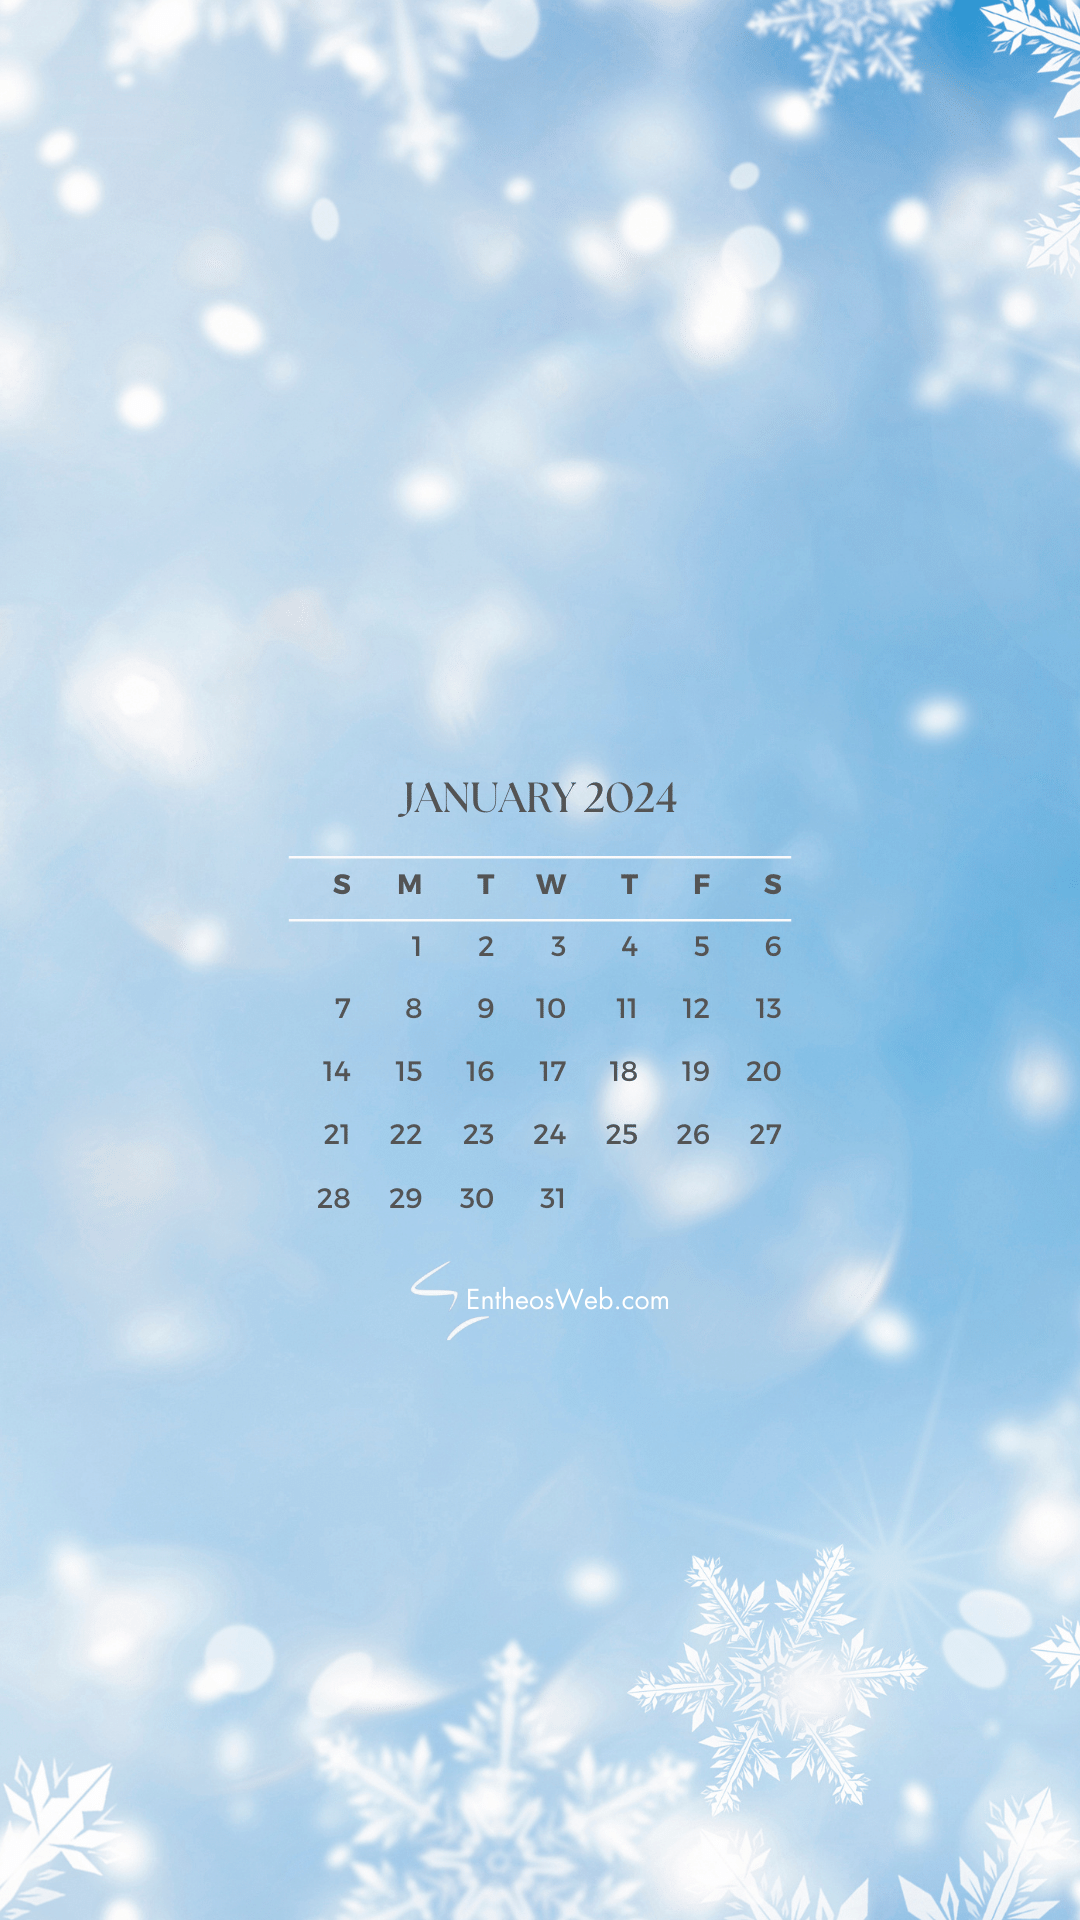 January 2024 Phone Wallpaper Calendars